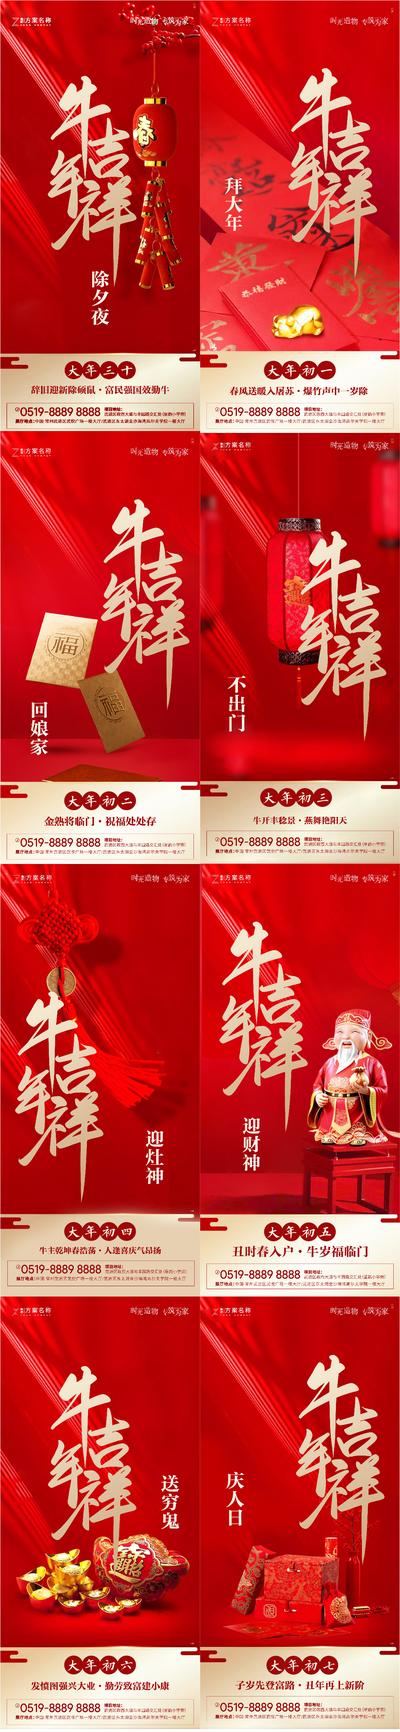 【南门网】海报 地产 中国传统节日 新年 春节 过年 年俗 系列 红包 中国结 礼品